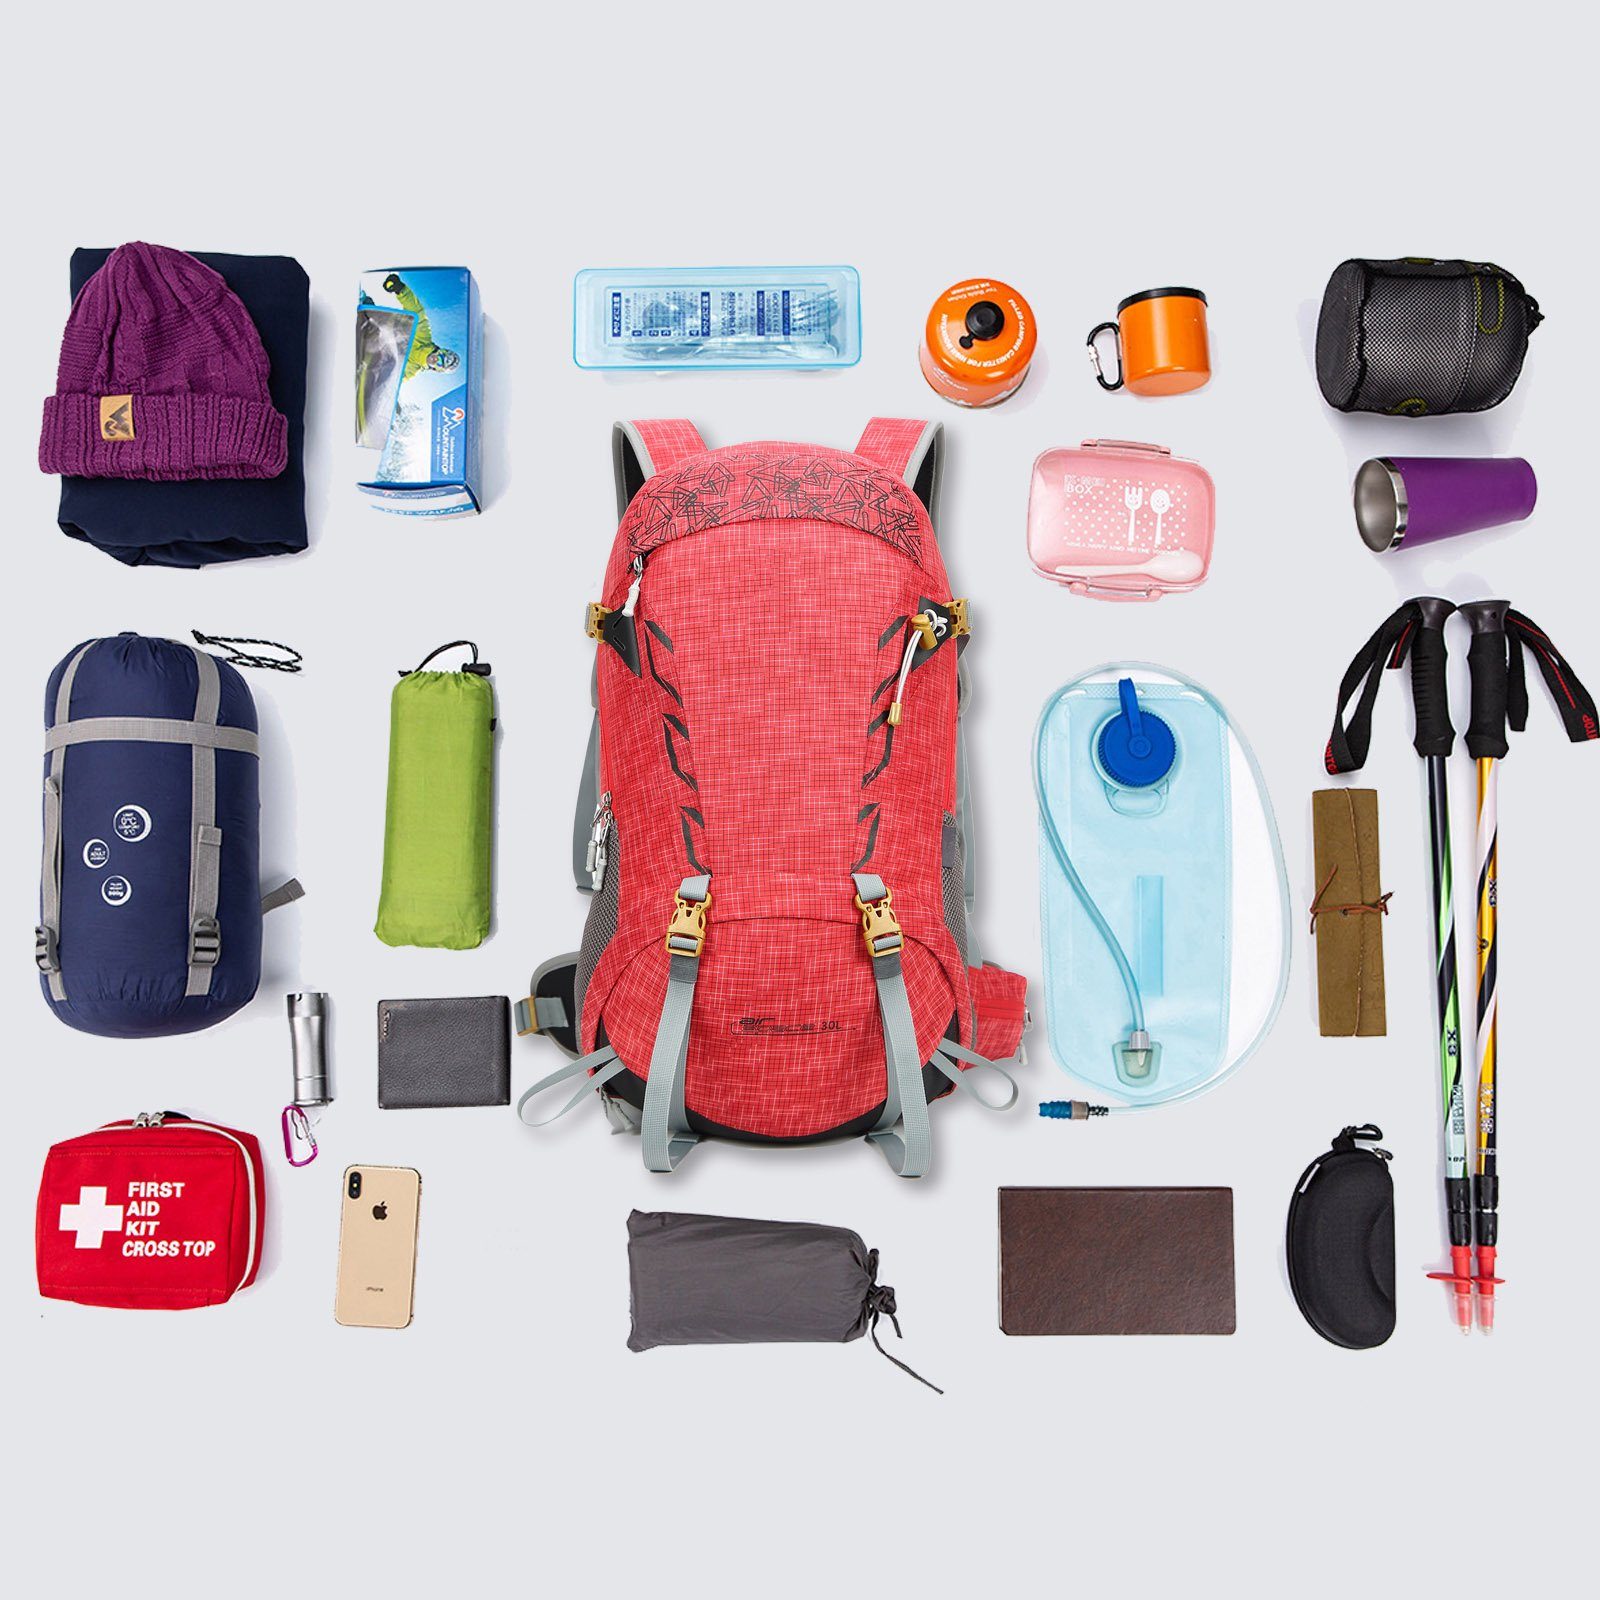 Rot mit Outdoor Rückenbelüftung, Wanderrucksack Camping Reisen Wasserdicht 30L mit Trekking Wanderrucksack Regenschutz (Einschließlich Regenschutz), TAN.TOMI für Großer